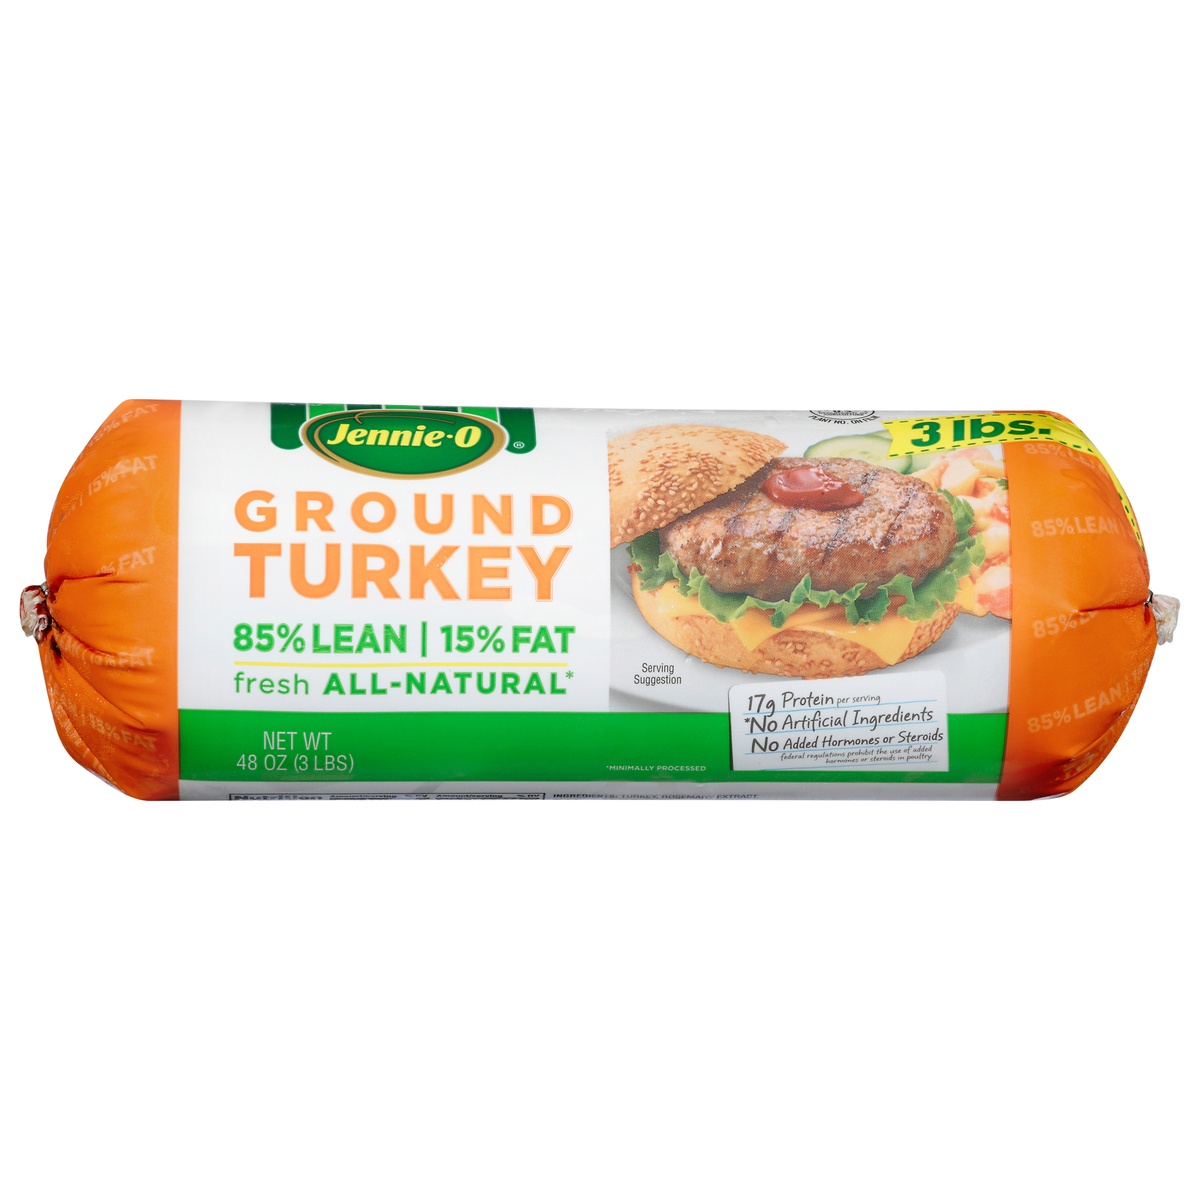 slide 1 of 6, Jennie-O JENNIE-O Ground Turkey 85% Lean / 15% Fat - 3 lb. chub, 3 lb